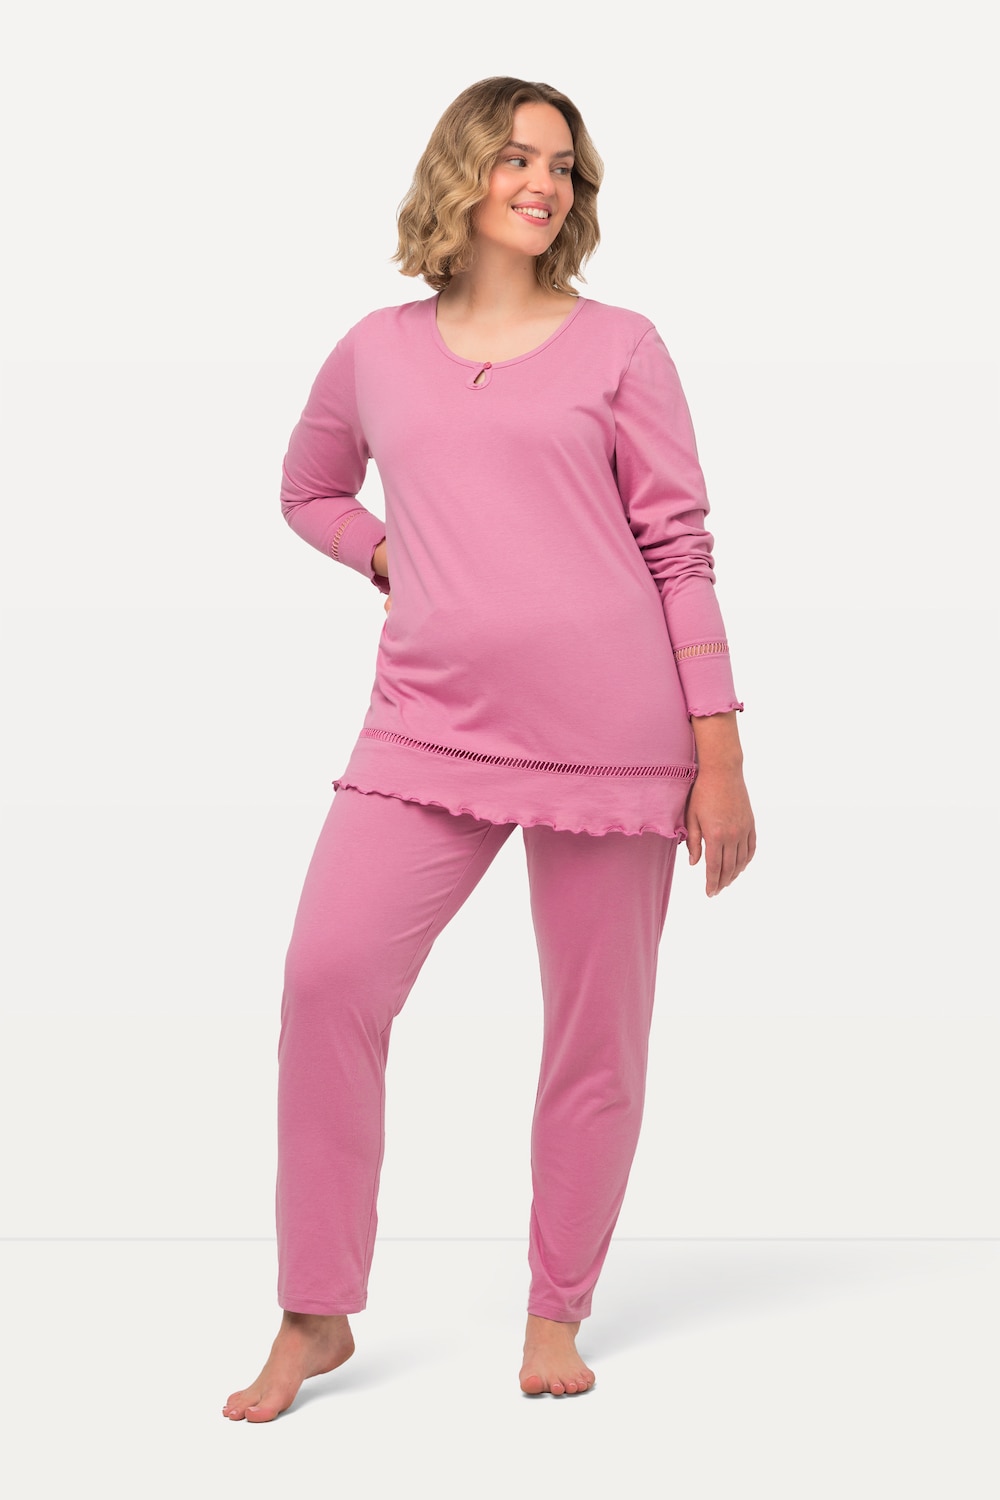 Grote Maten Pyjama, Dames, roze, Maat: 58/60, Katoen, Ulla Popken